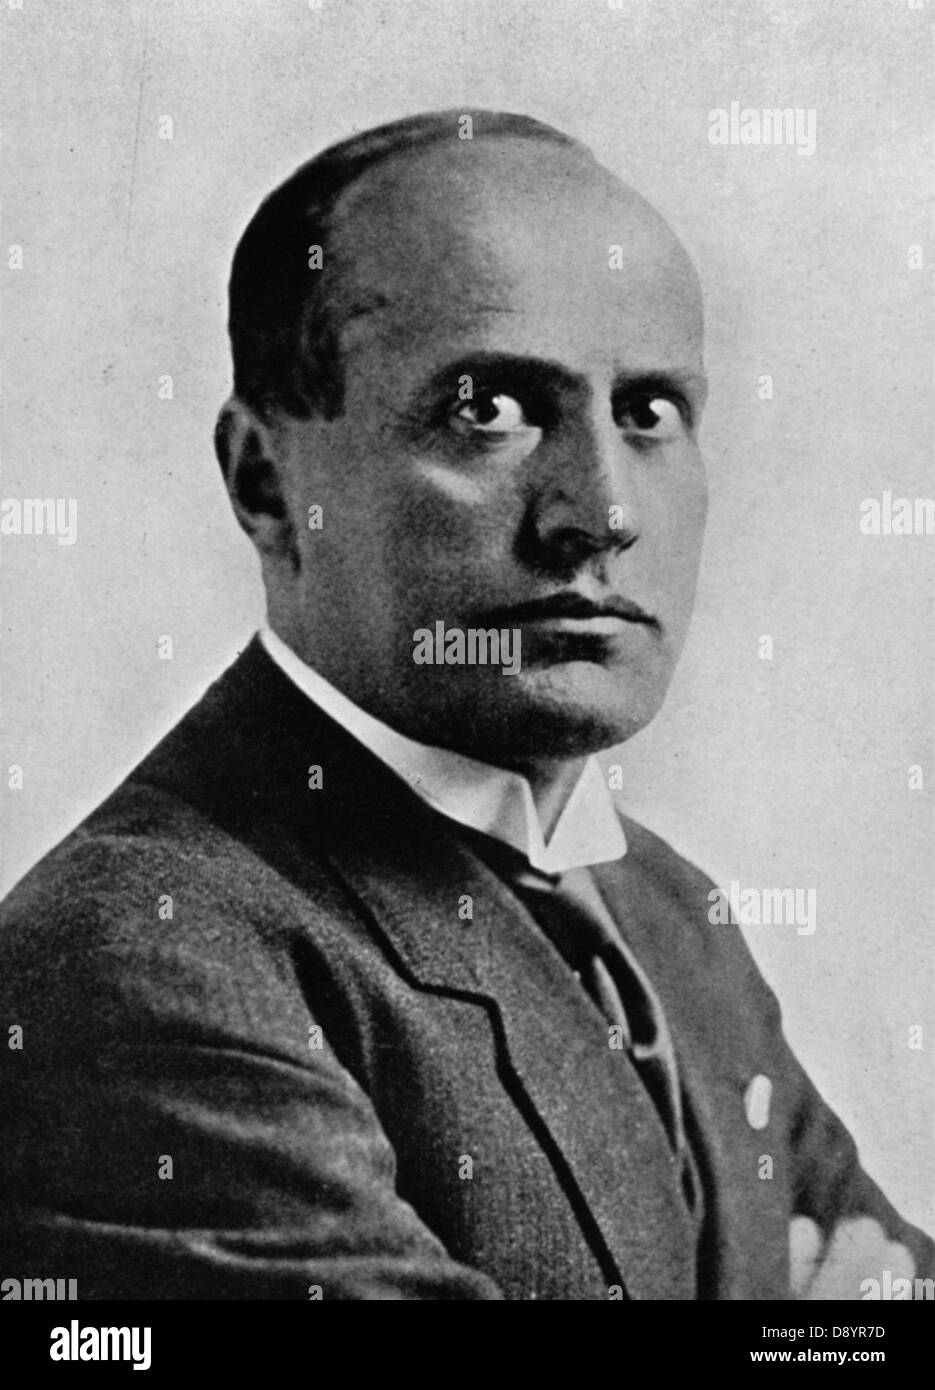 Ritratto di Benito Mussolini a.k.a 'Il Duce' Italiano dittatore fascista Foto Stock